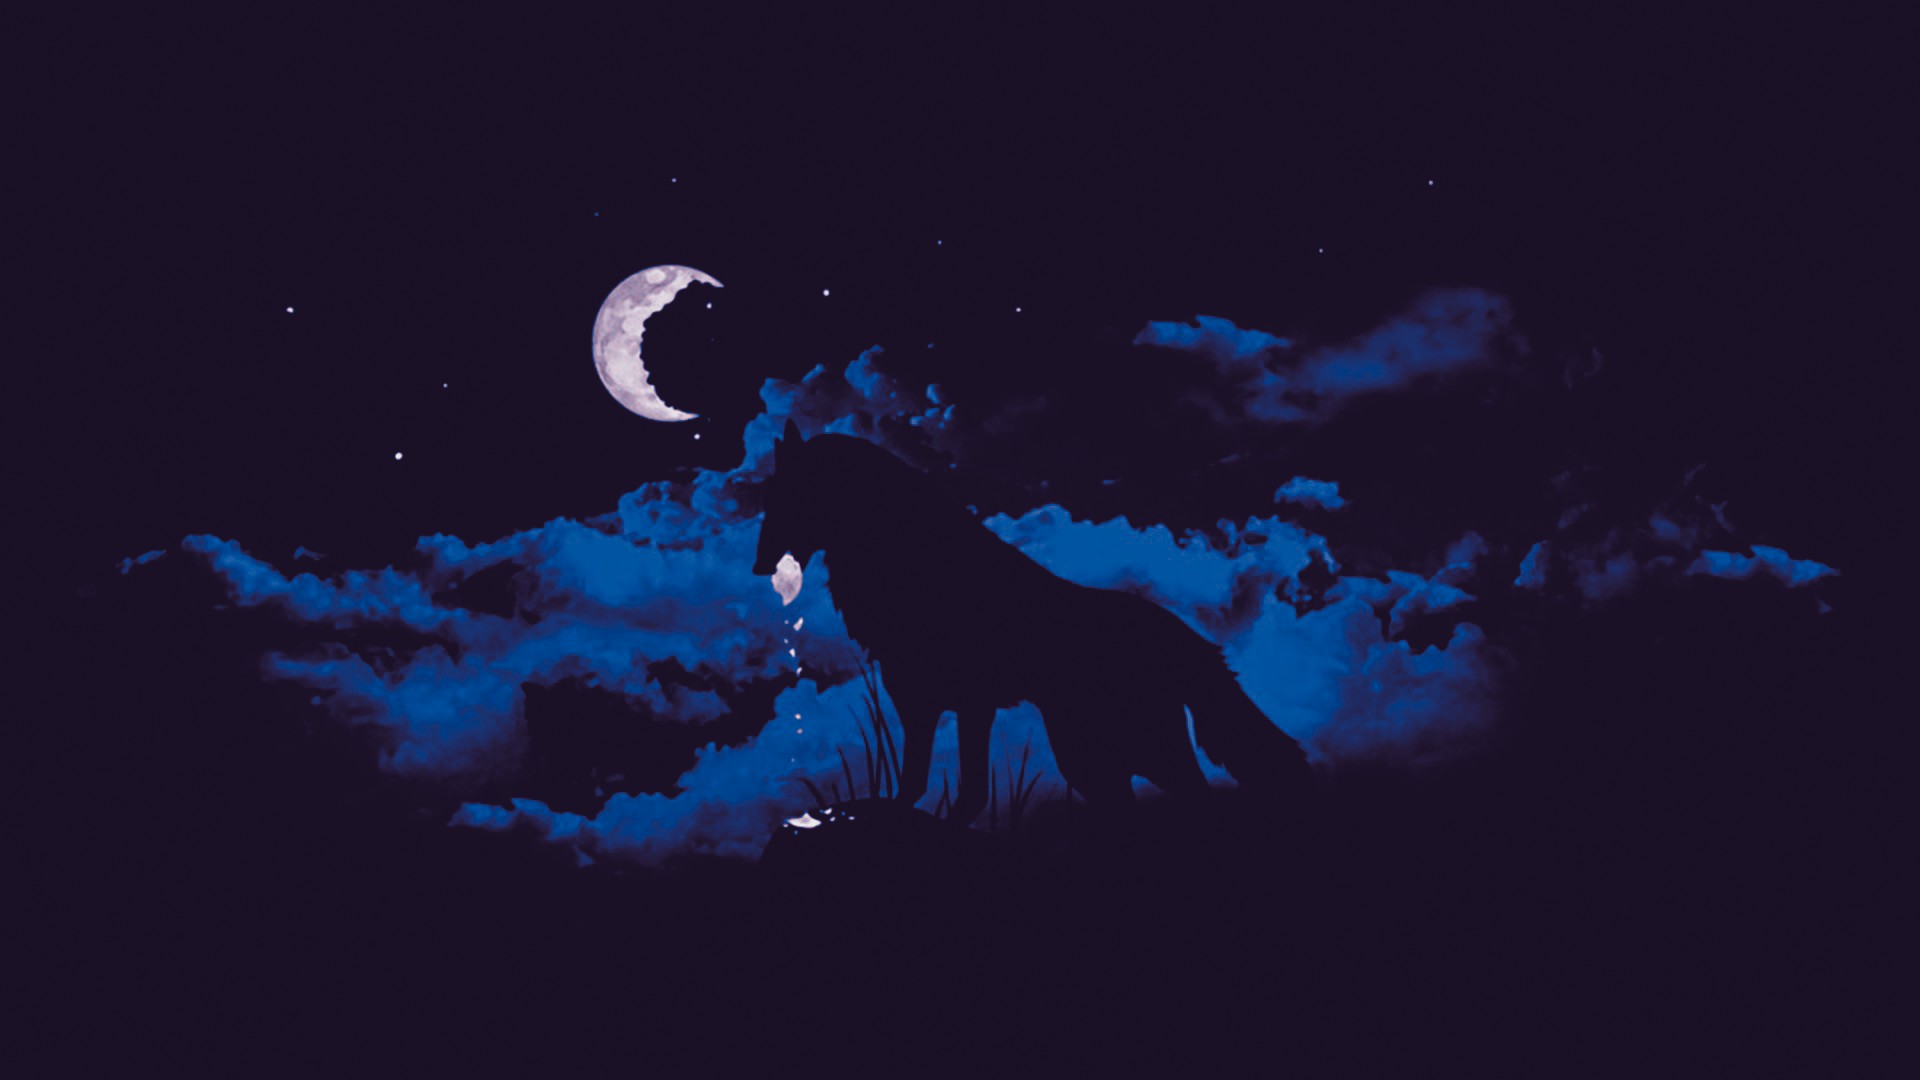 wolf, Moonlight, Clouds, Moon, Fantasy art, Night, Artwork Wallpaper